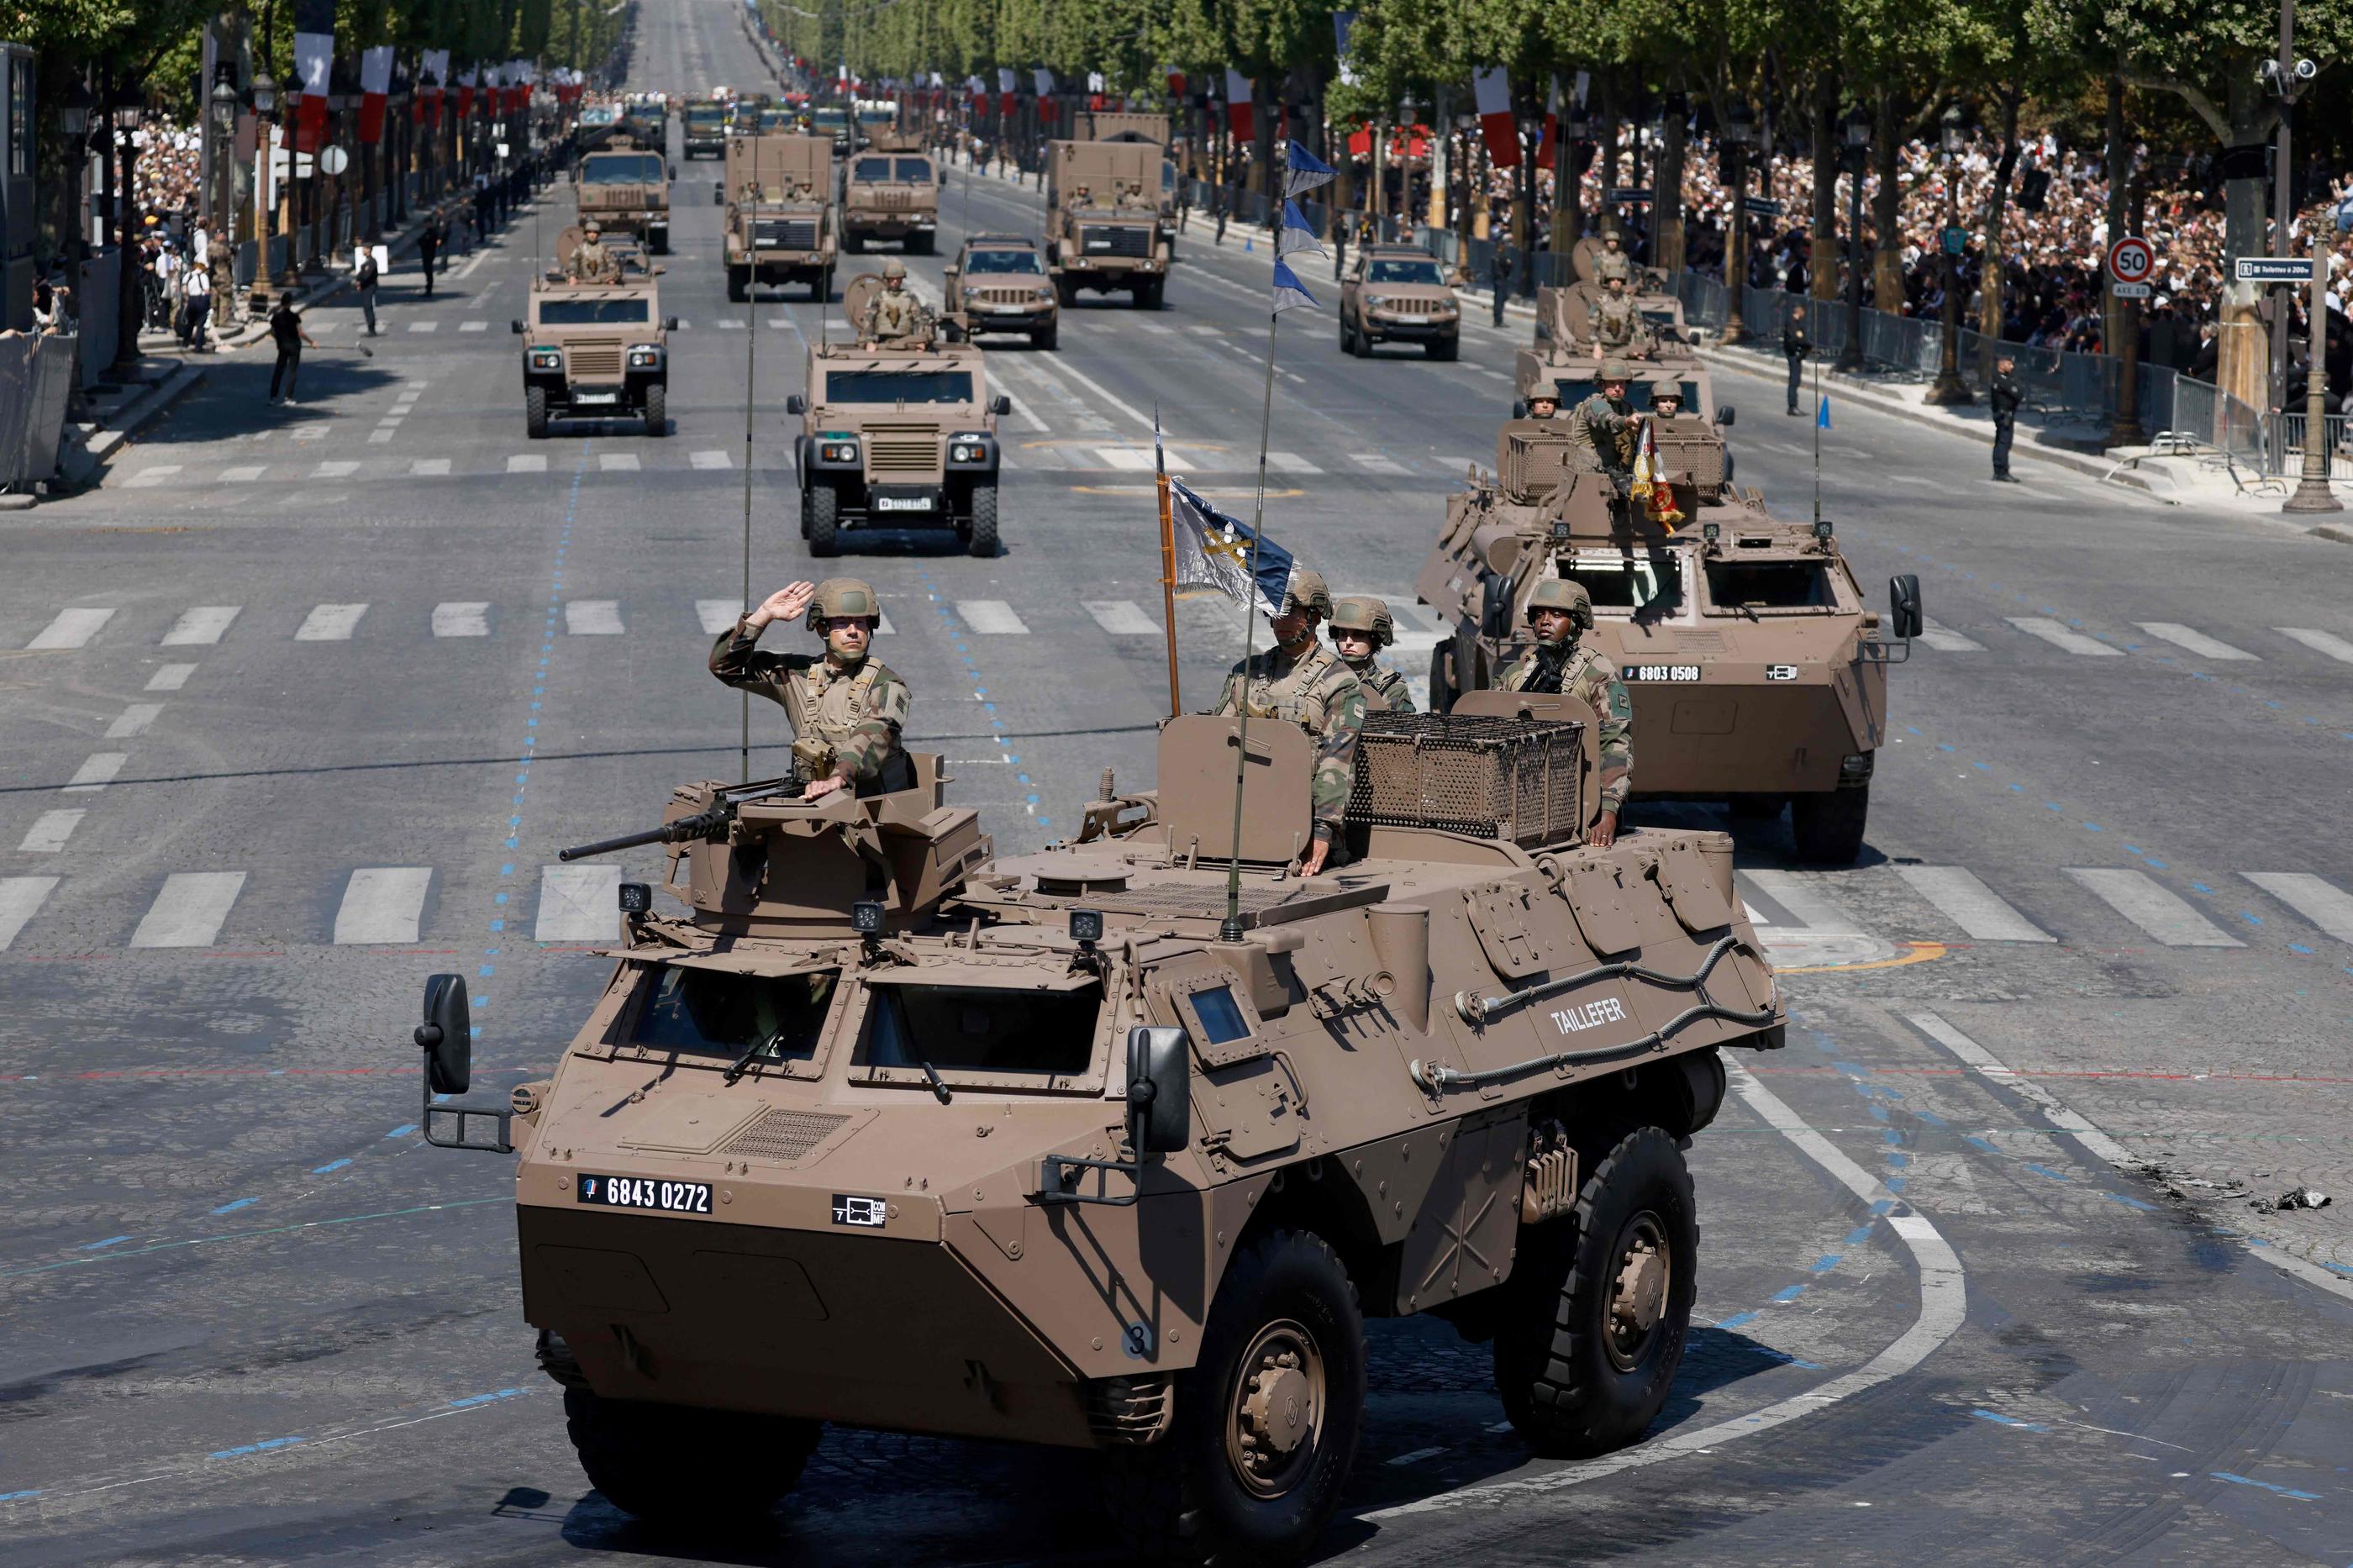 La France va livrer "des centaines" de blindés à l'Ukraine pour l'aider dans sa guerre face à la Russie. AFP/Ludovic Marin